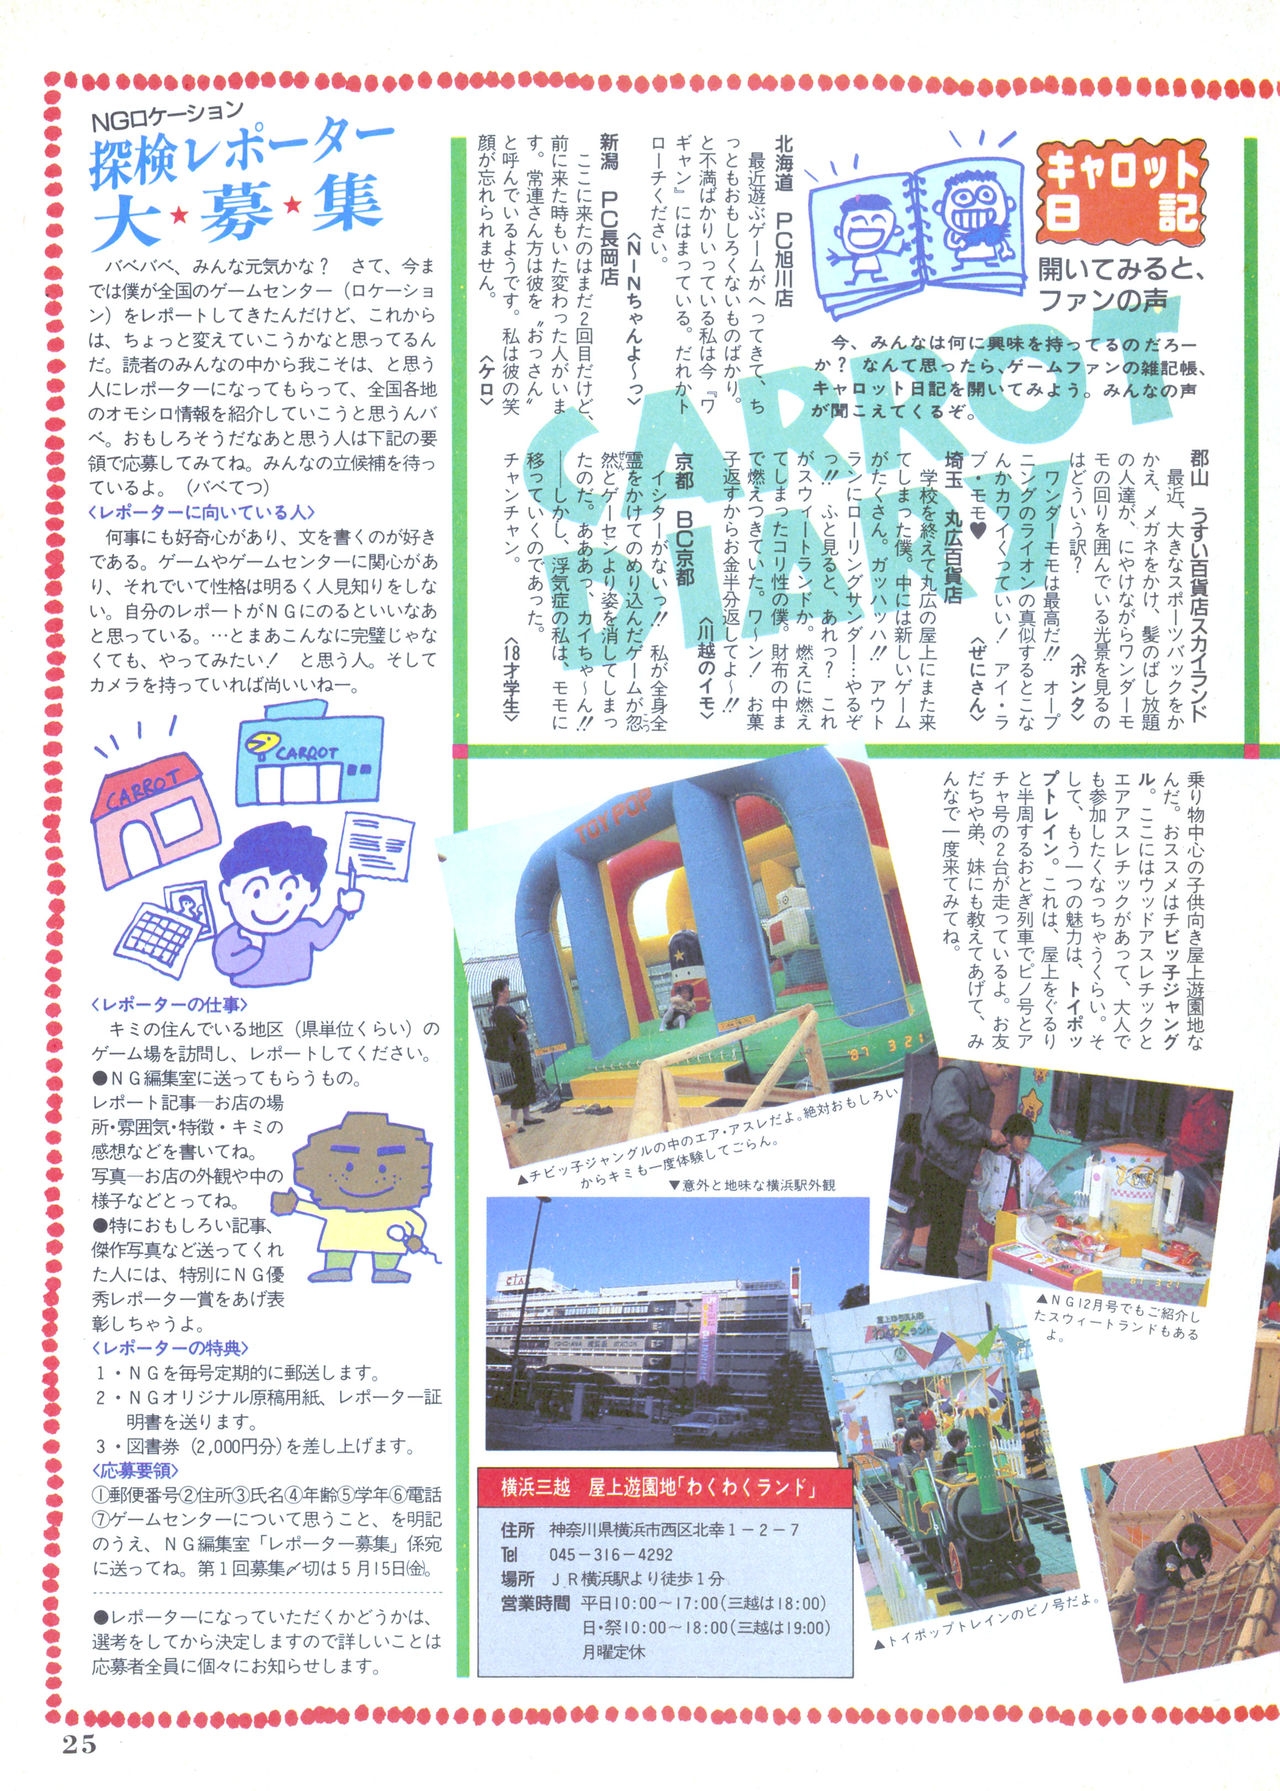 NG Namco Community Magazine 07 24